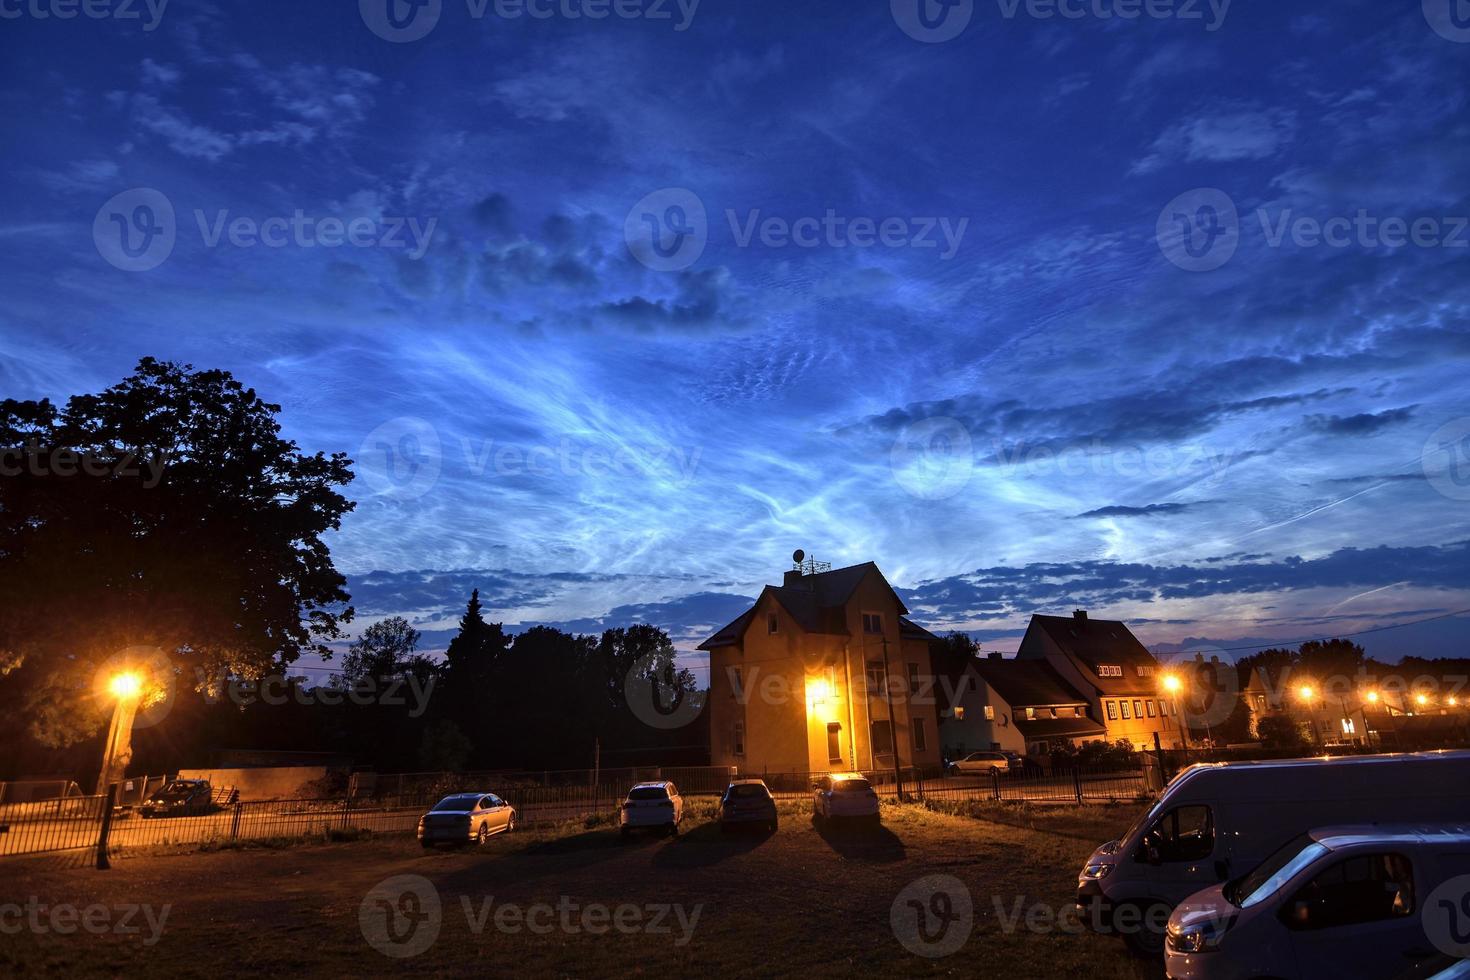 extrem helle und seltene nachtleuchtende wolken in der stadt am 21. juni 2019 in einer sommernacht in deutschland foto